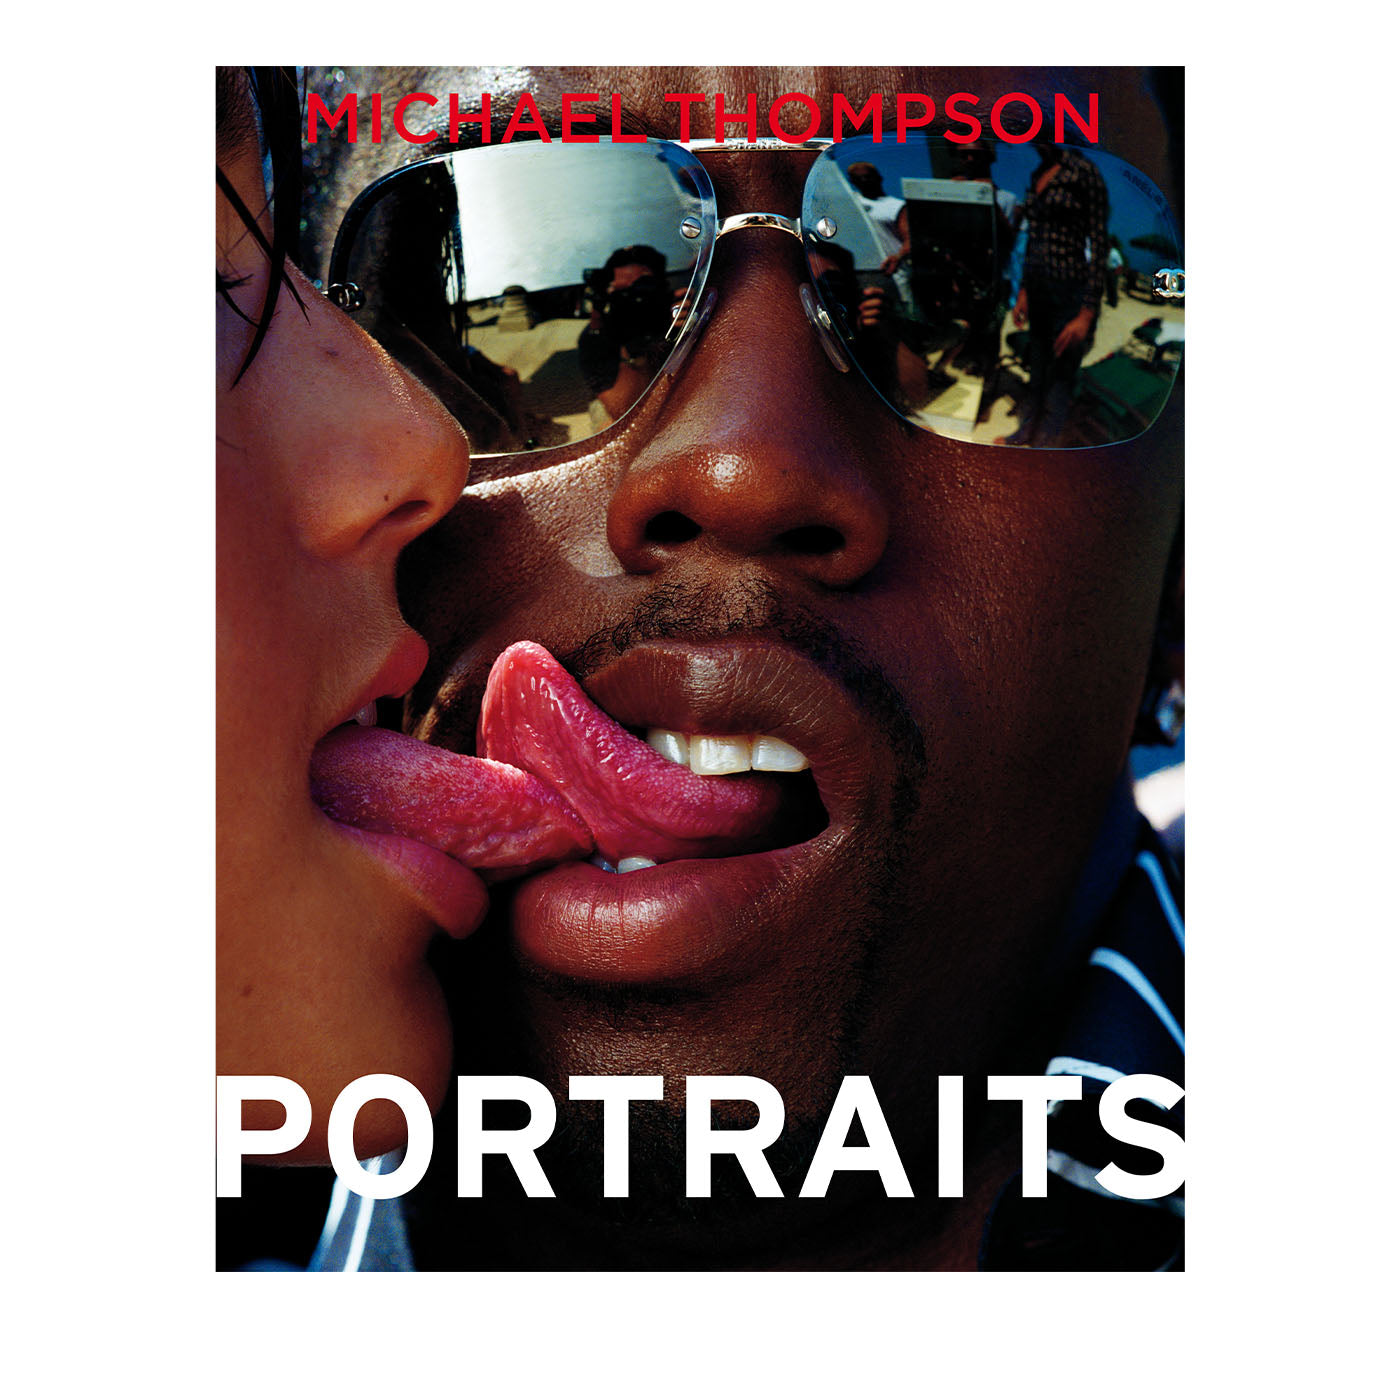 Porträts Sammlerausgabe von Michael Thompson - Hauptansicht